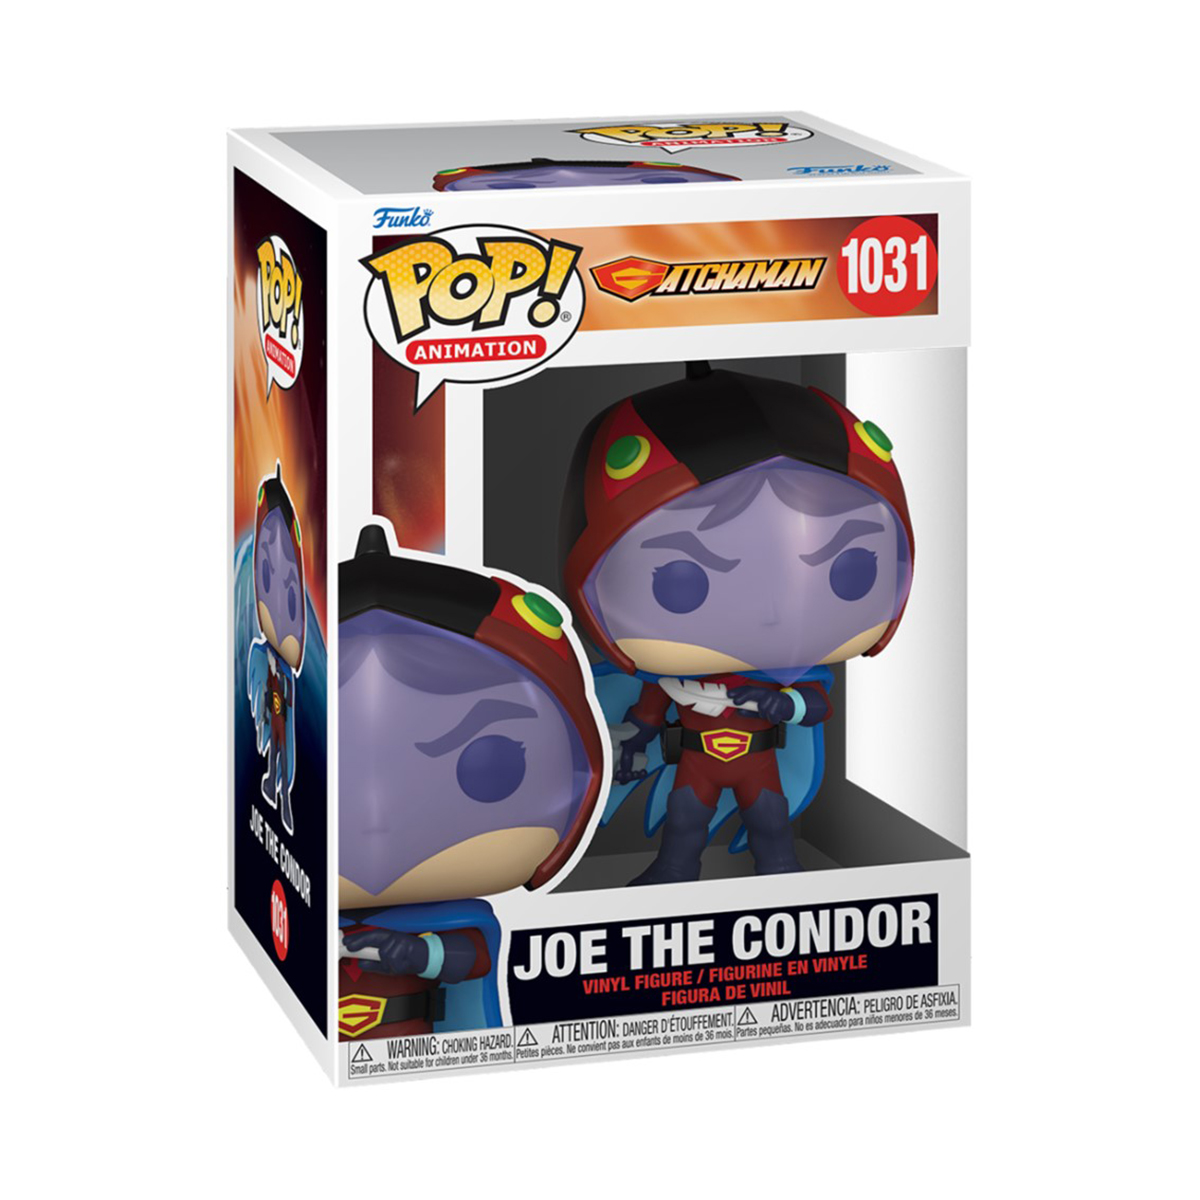 Condor Joe the Gatchaman POP - -